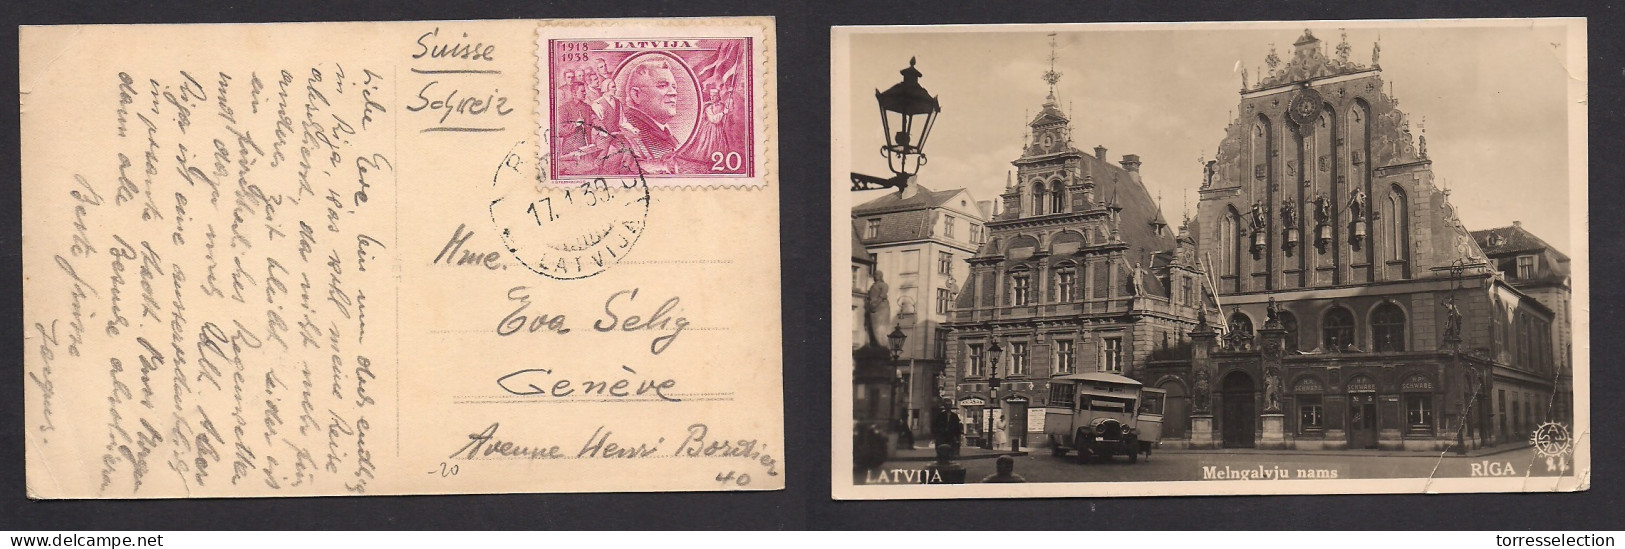 LATVIA. 1939 (17 Jan) Riga - Geneve, Switzerland. Single 20c Violet Fkd Ppc. Fine Used. - Letland